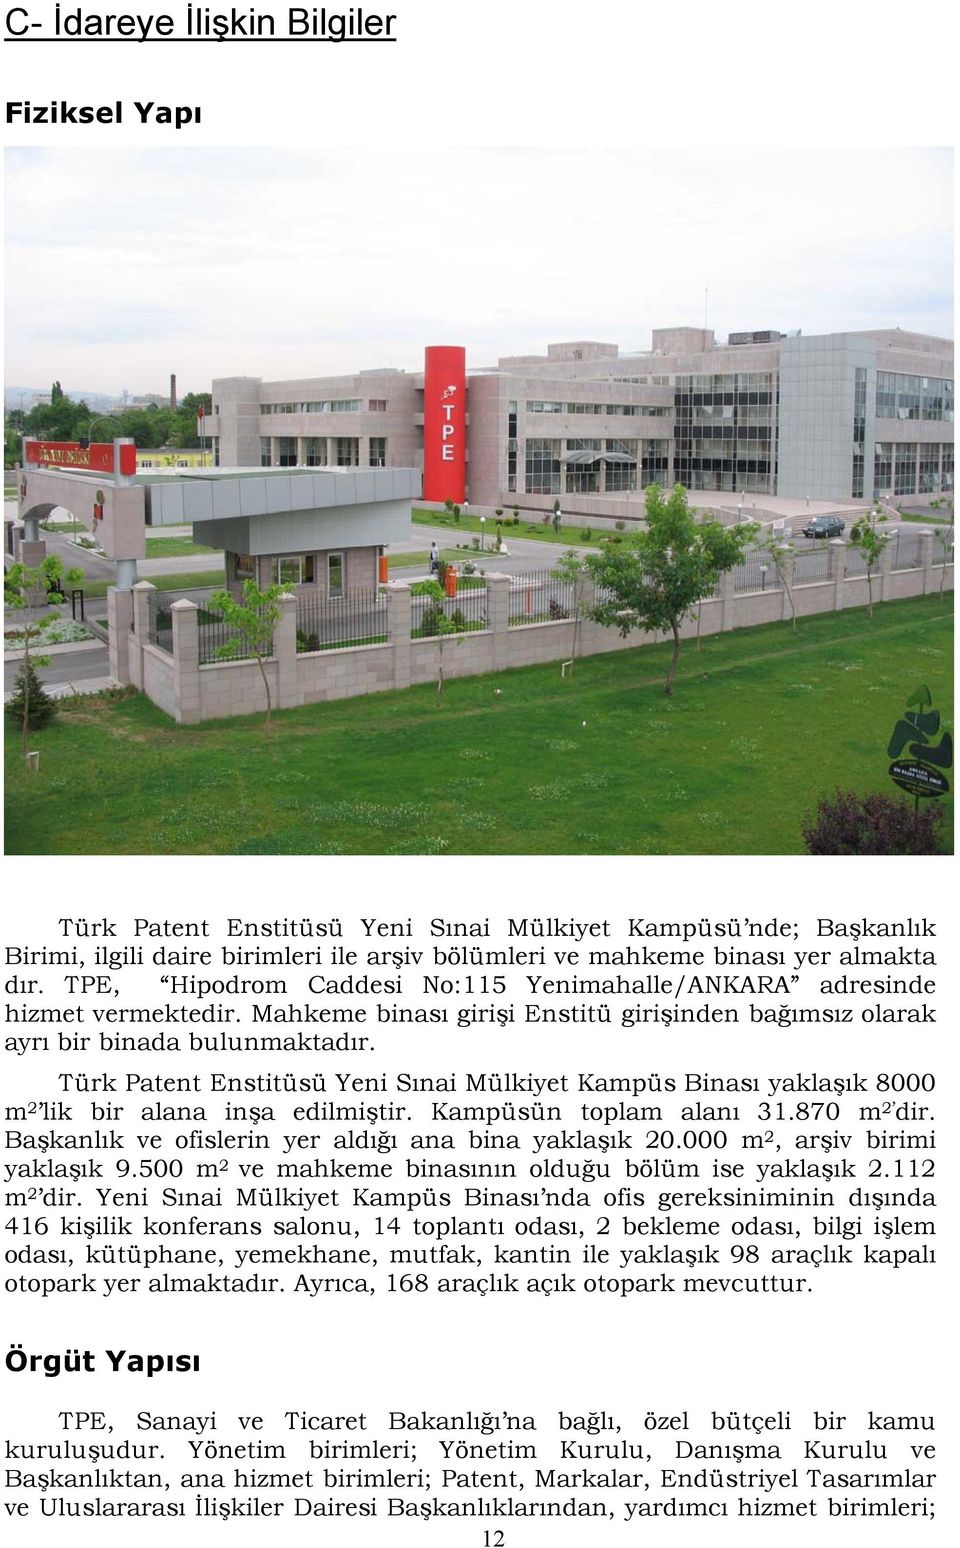 Türk Patent Enstitüsü Yeni Sınai Mülkiyet Kampüs Binası yaklaşık 8000 m 2 lik bir alana inşa edilmiştir. Kampüsün toplam alanı 31.870 m 2 dir. Başkanlık ve ofislerin yer aldığı ana bina yaklaşık 20.